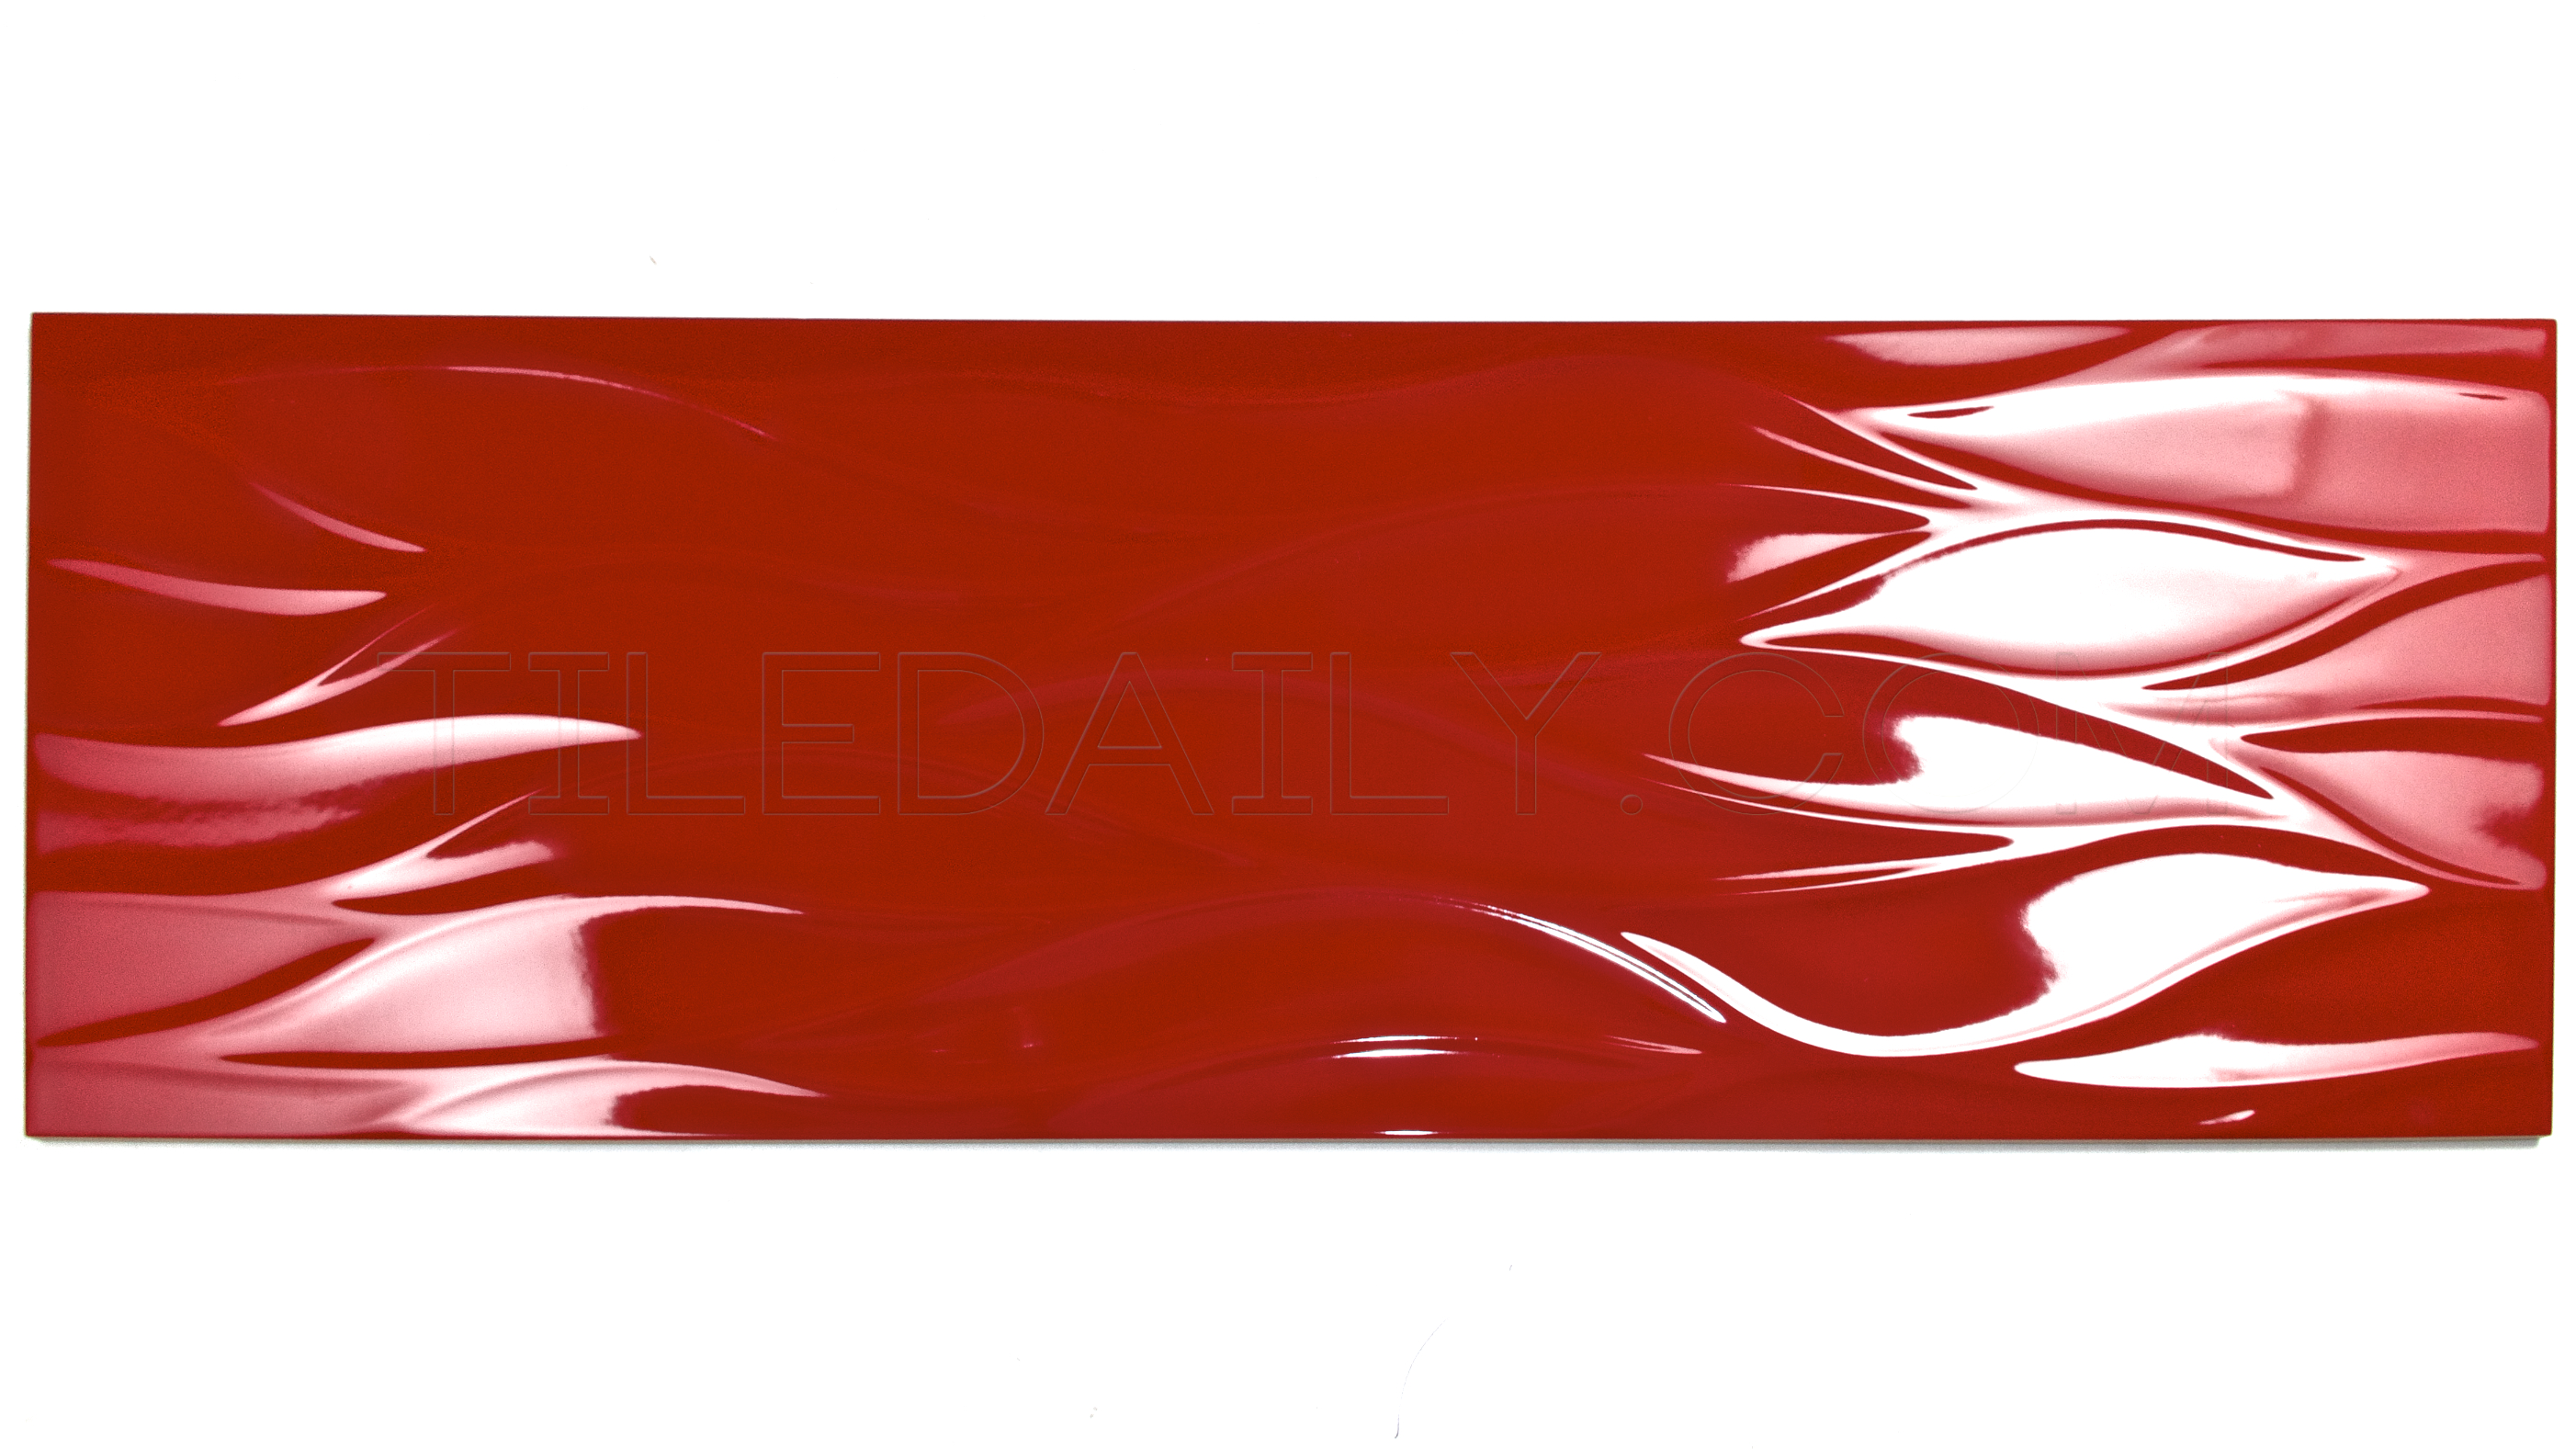 Leaf Wave Ceramic Tile, Red, White \u2013 tiledaily